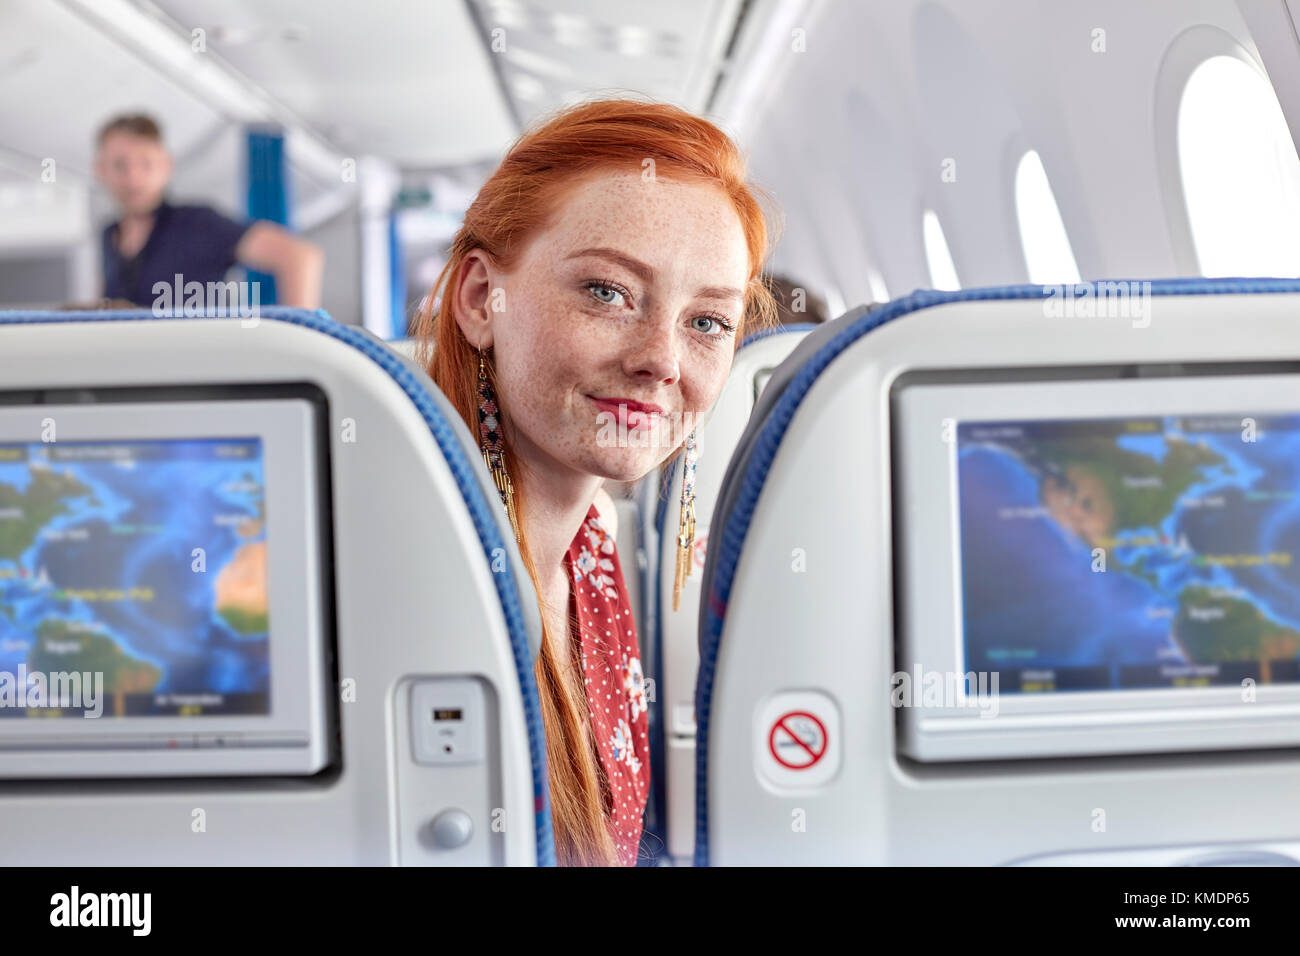 Porträt lächelnde junge Frau mit roten Haaren und Sommersprossen auf Flugzeug Stockfoto